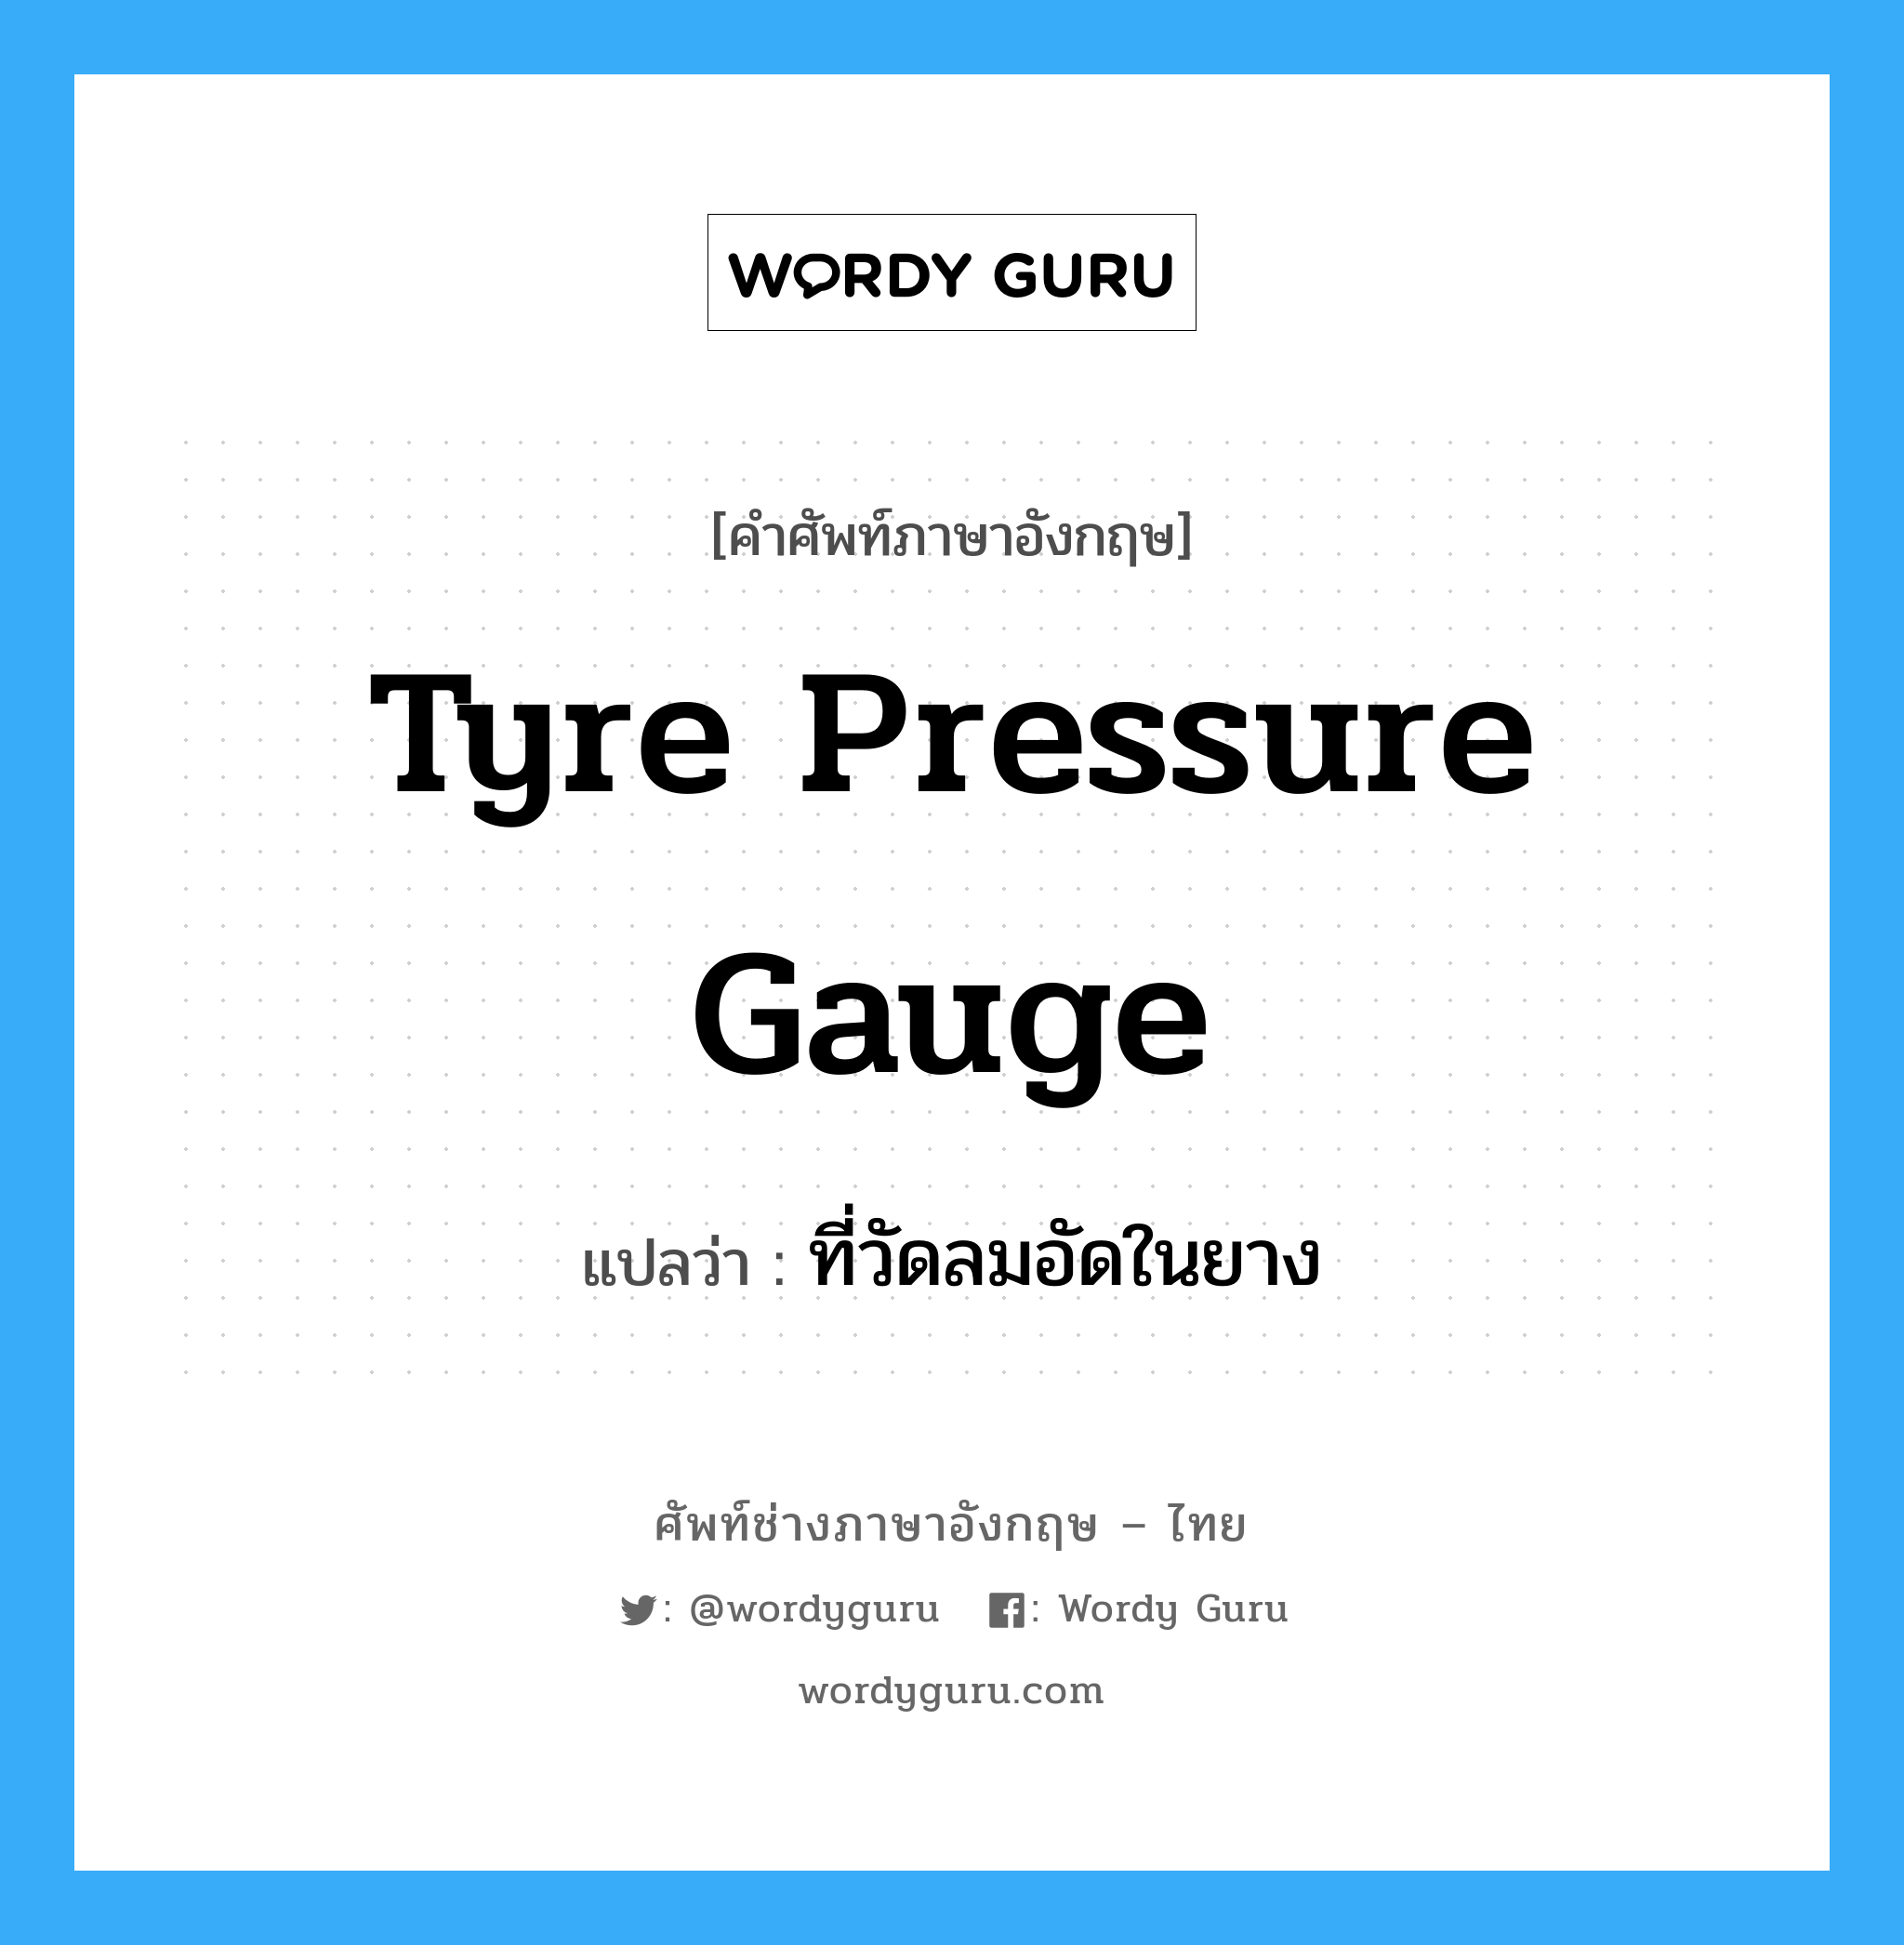 tyre pressure gauge แปลว่า?, คำศัพท์ช่างภาษาอังกฤษ - ไทย tyre pressure gauge คำศัพท์ภาษาอังกฤษ tyre pressure gauge แปลว่า ที่วัดลมอัดในยาง